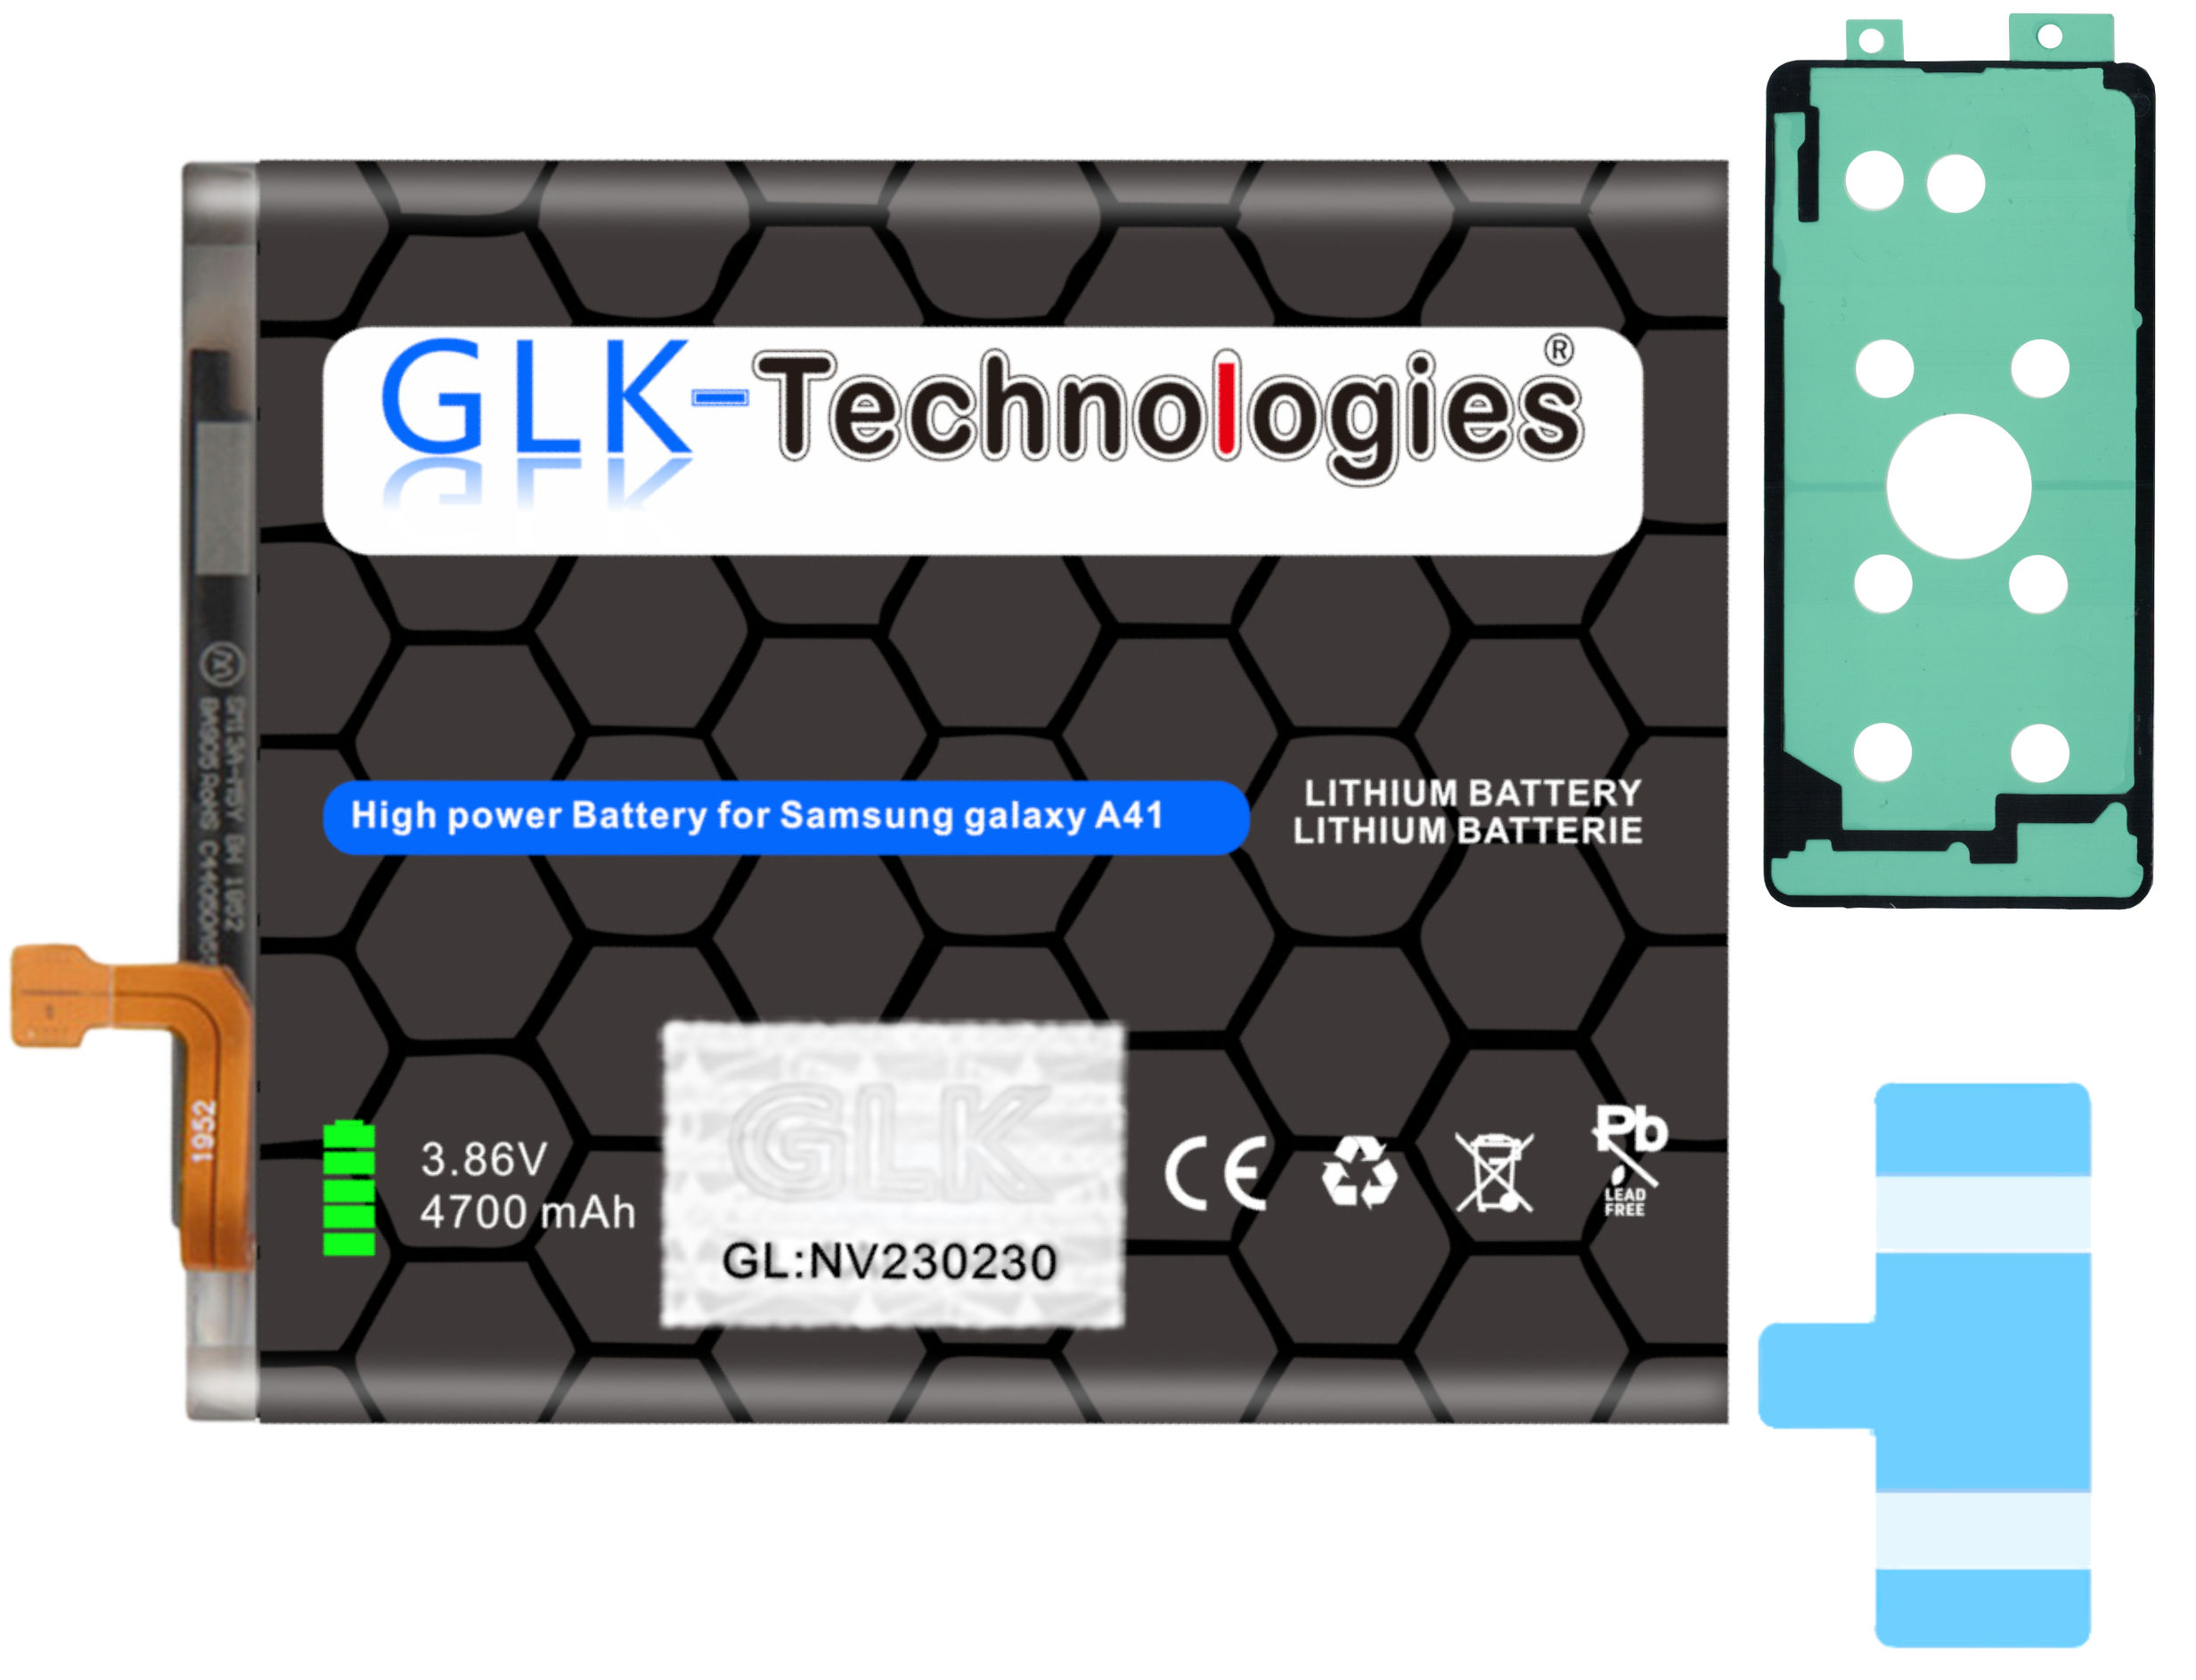 GLK-TECHNOLOGIES Ersatzakku für A415F Akku inkl. Ersatz A41 Klebebandsätze Galaxy Samsung 4700mAh Lithium-Ionen-Akku